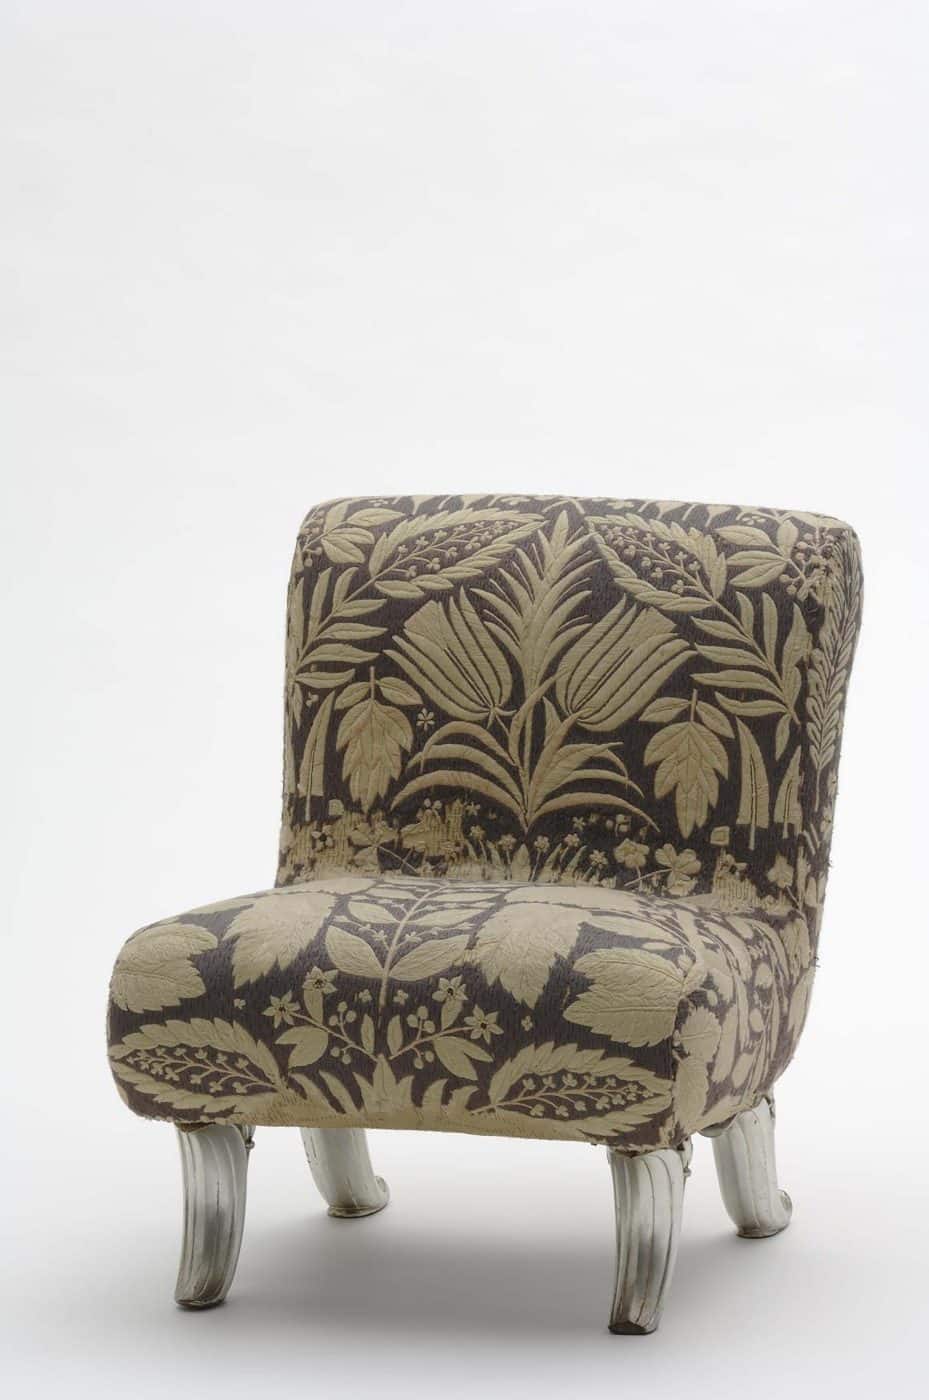 La chaise slipper au tissu brodé par Hedwig Pöchlmüller